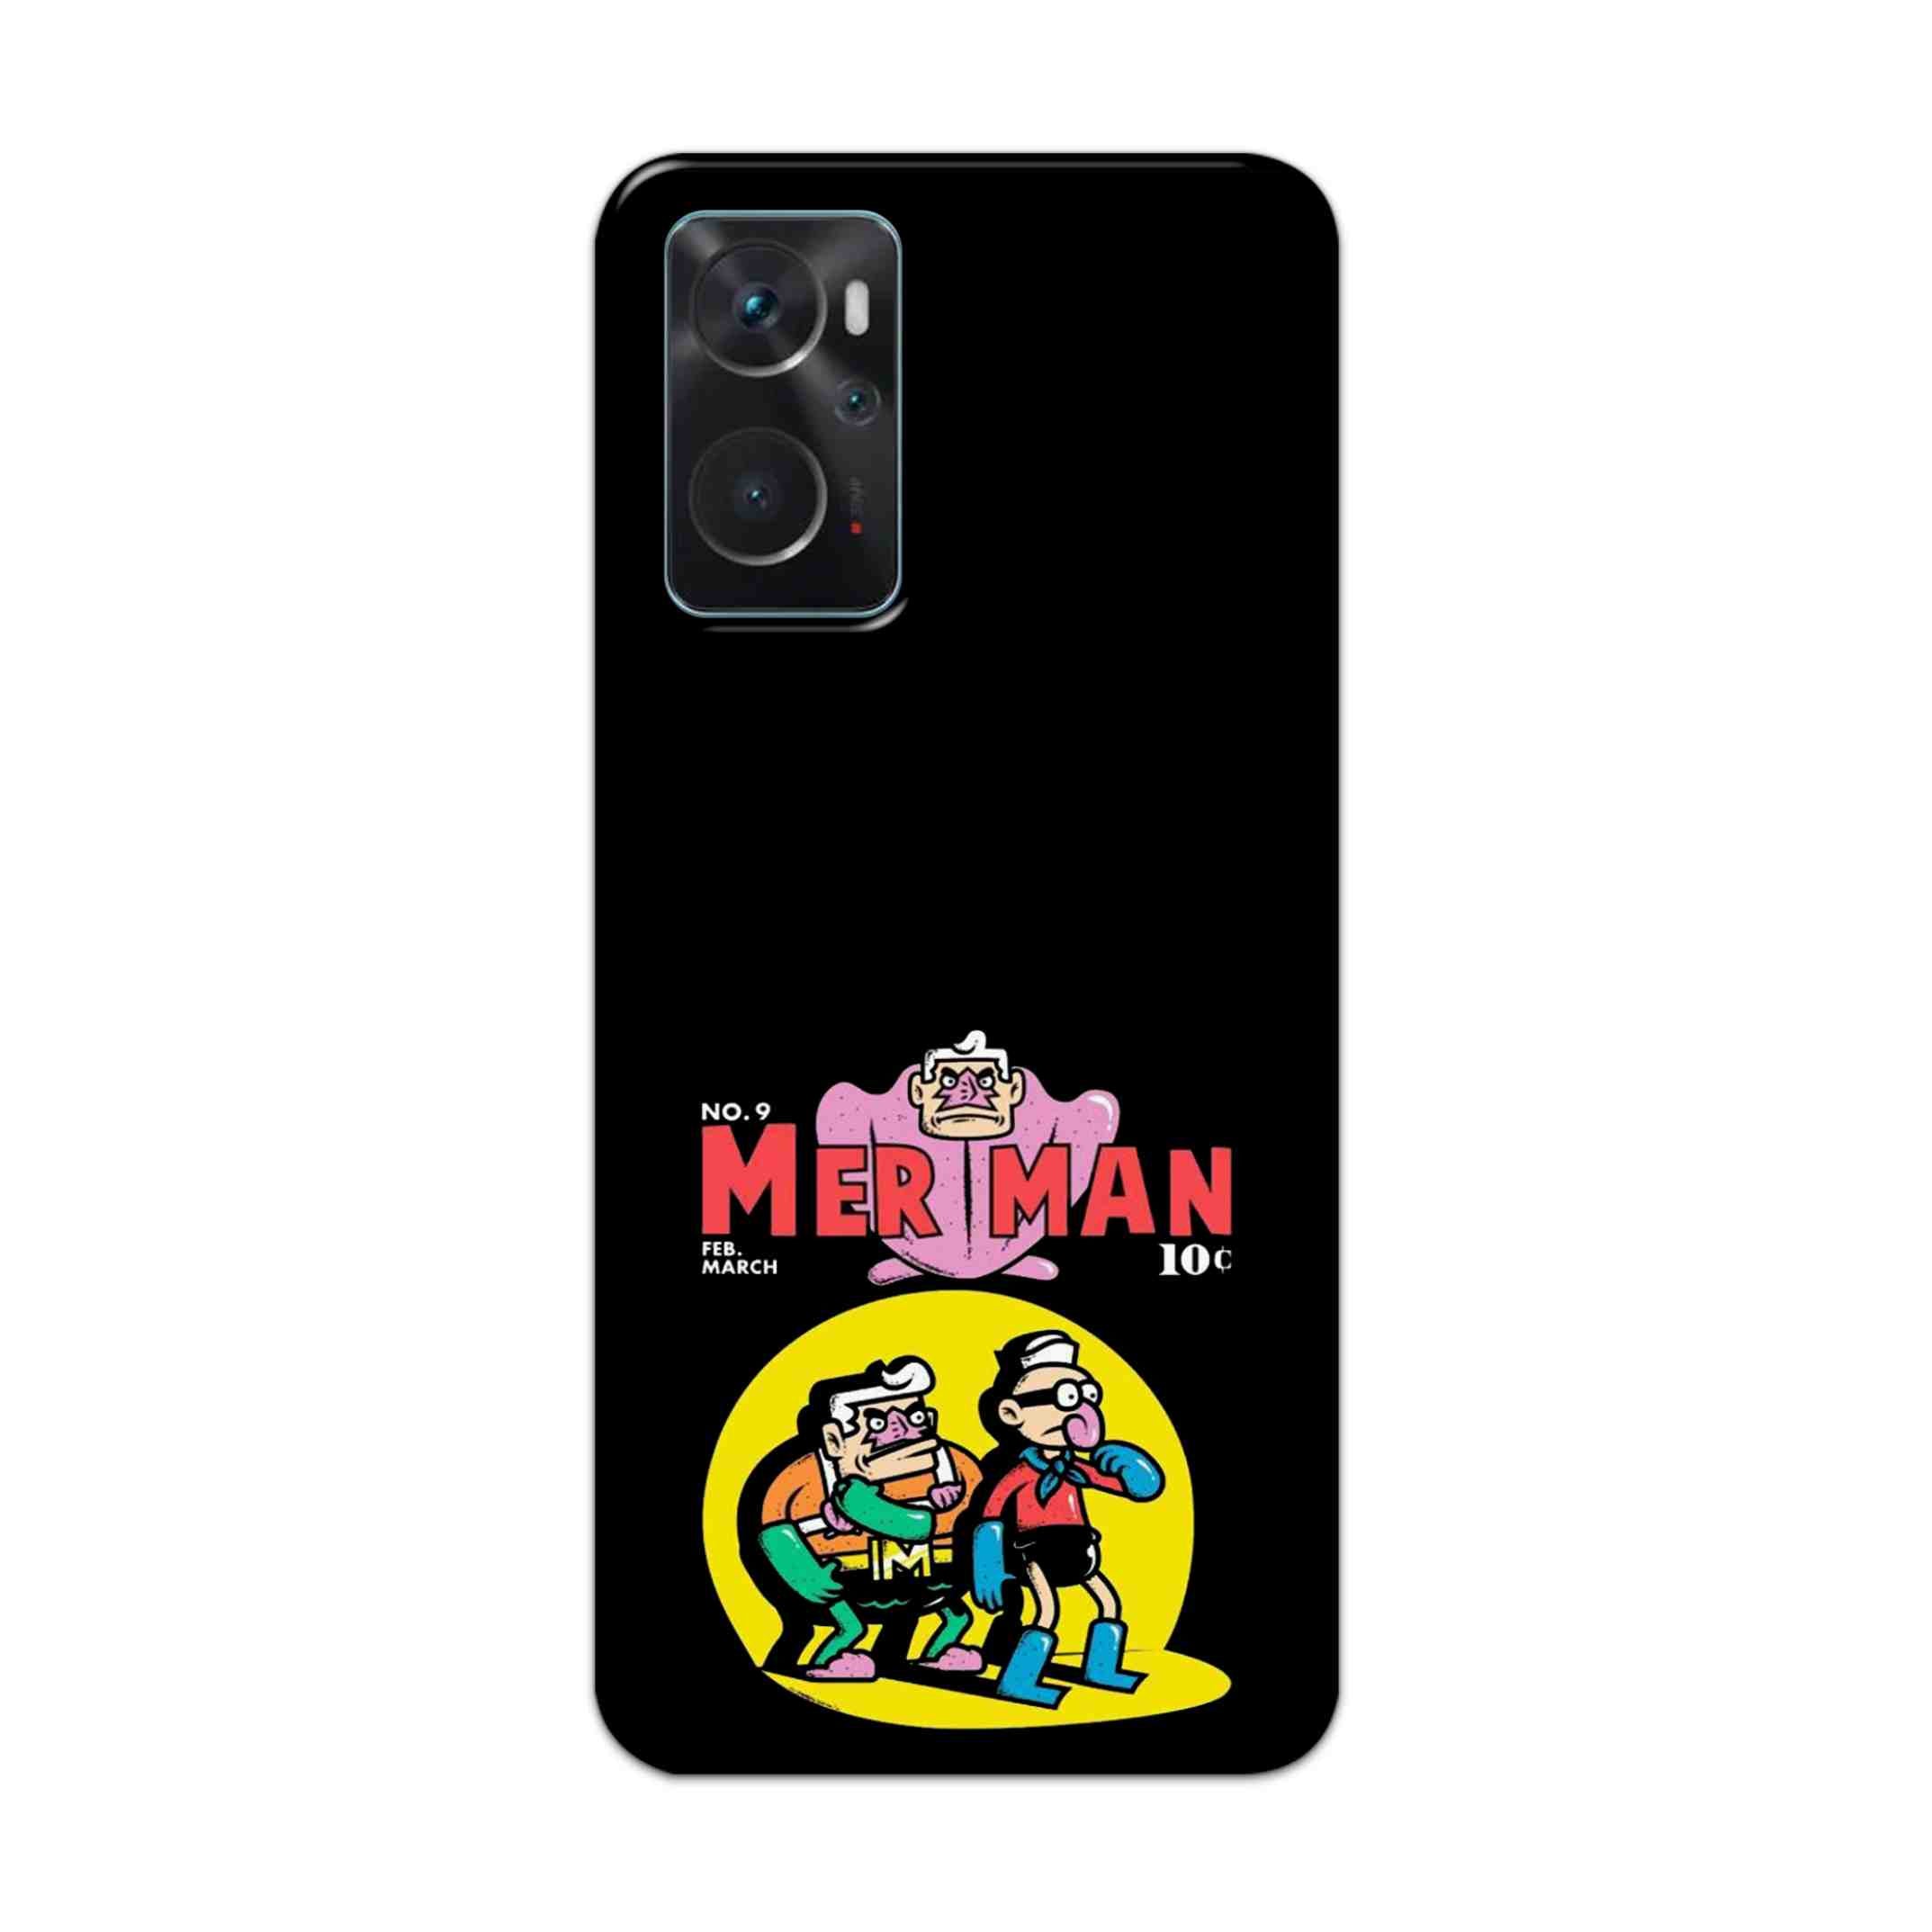 Buy Merman Hard Back Mobile Phone Case Cover For Oppo K10 Online